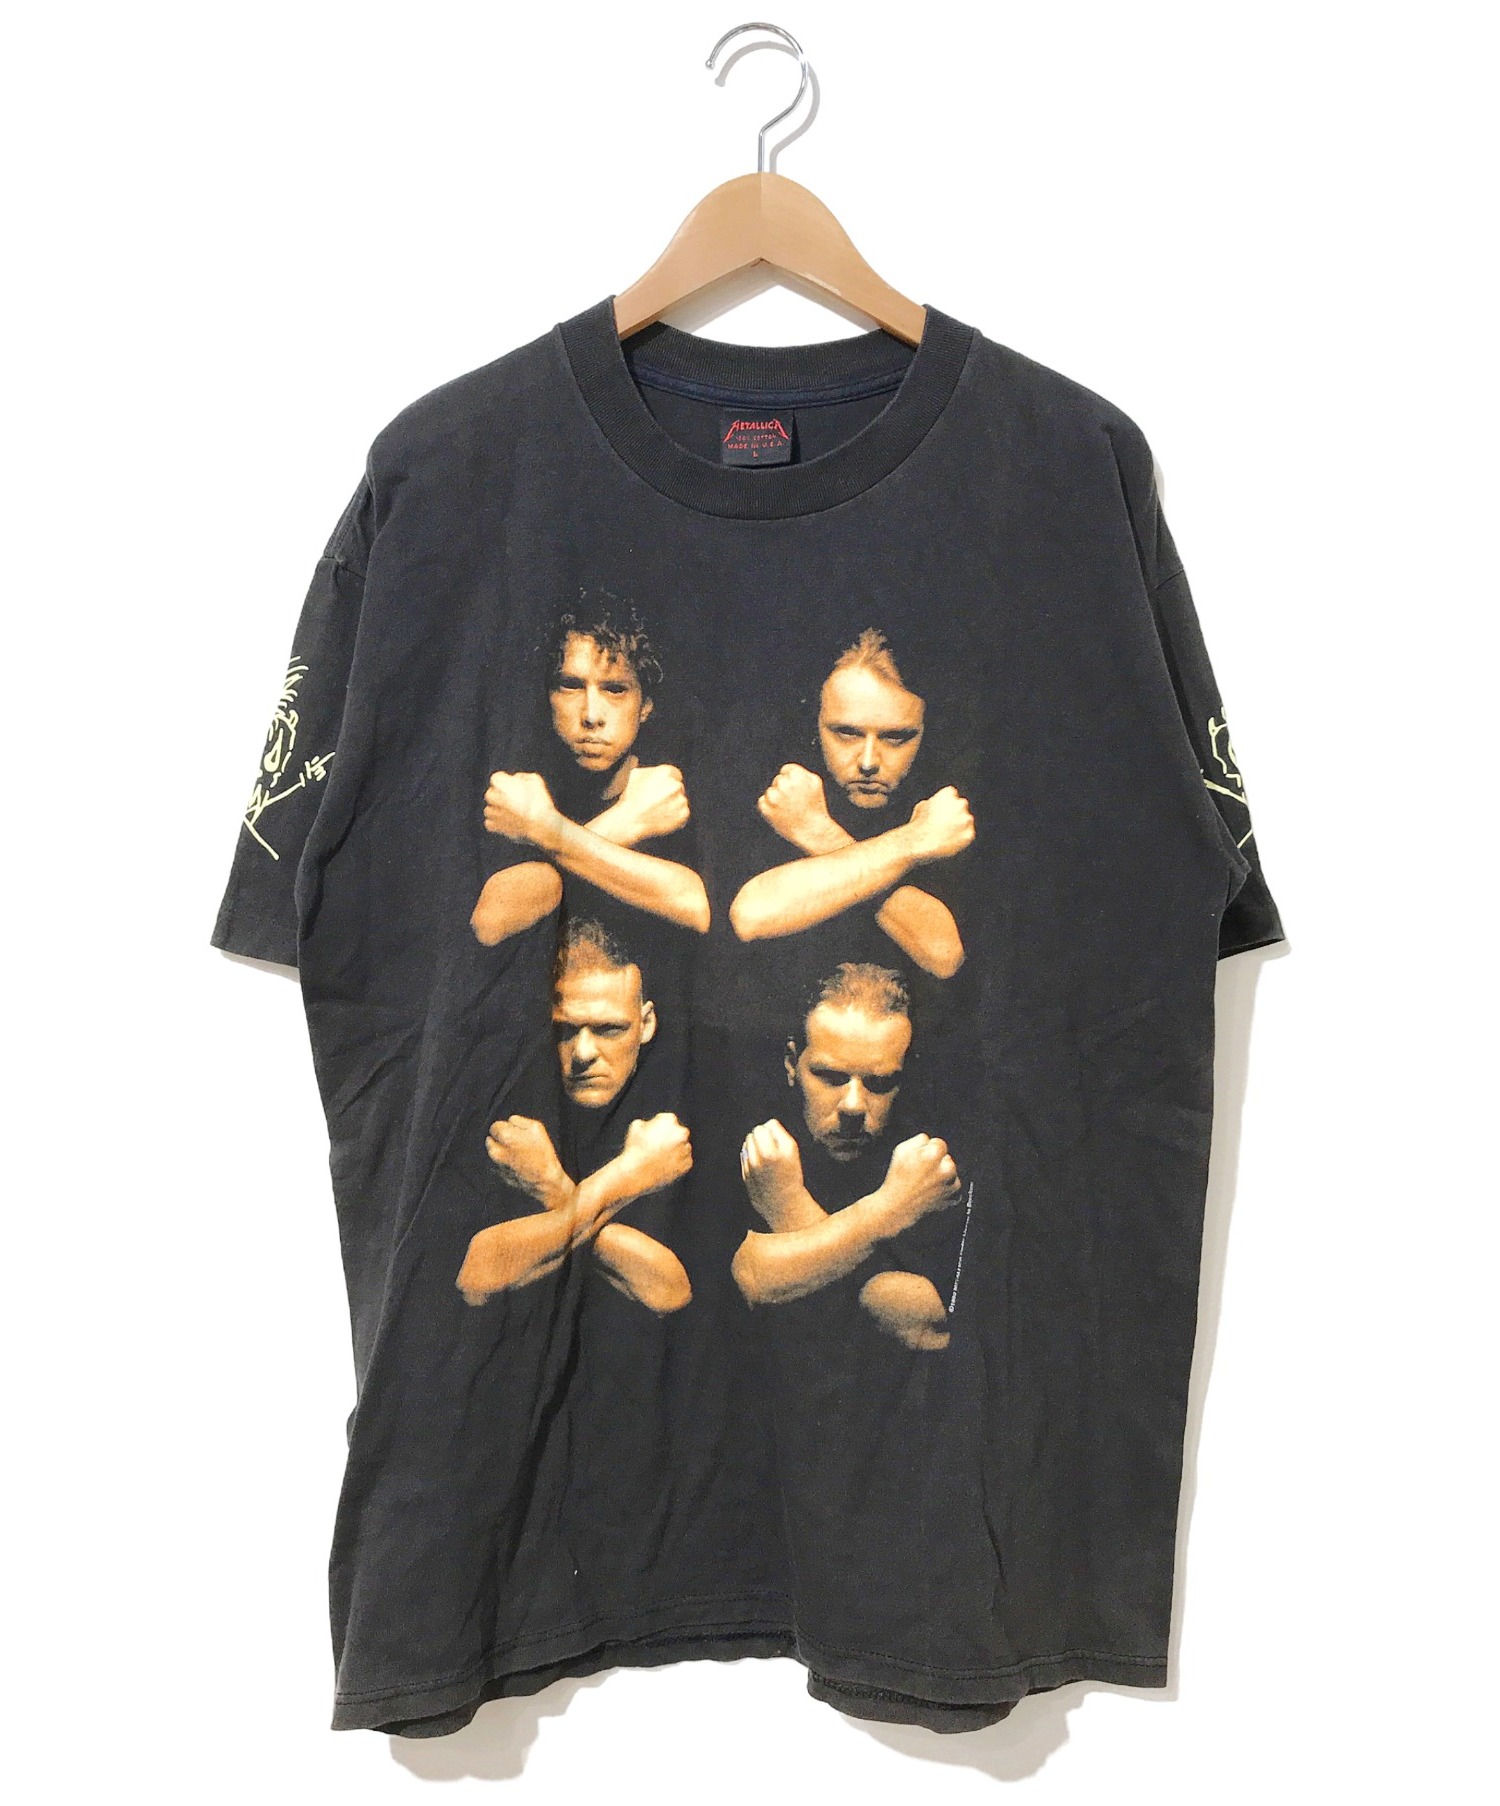 パスヘッド 両面プリント 1992 unforgiven METALLICA バンドTシャツ the メタリカ PUSHEAD 90年代